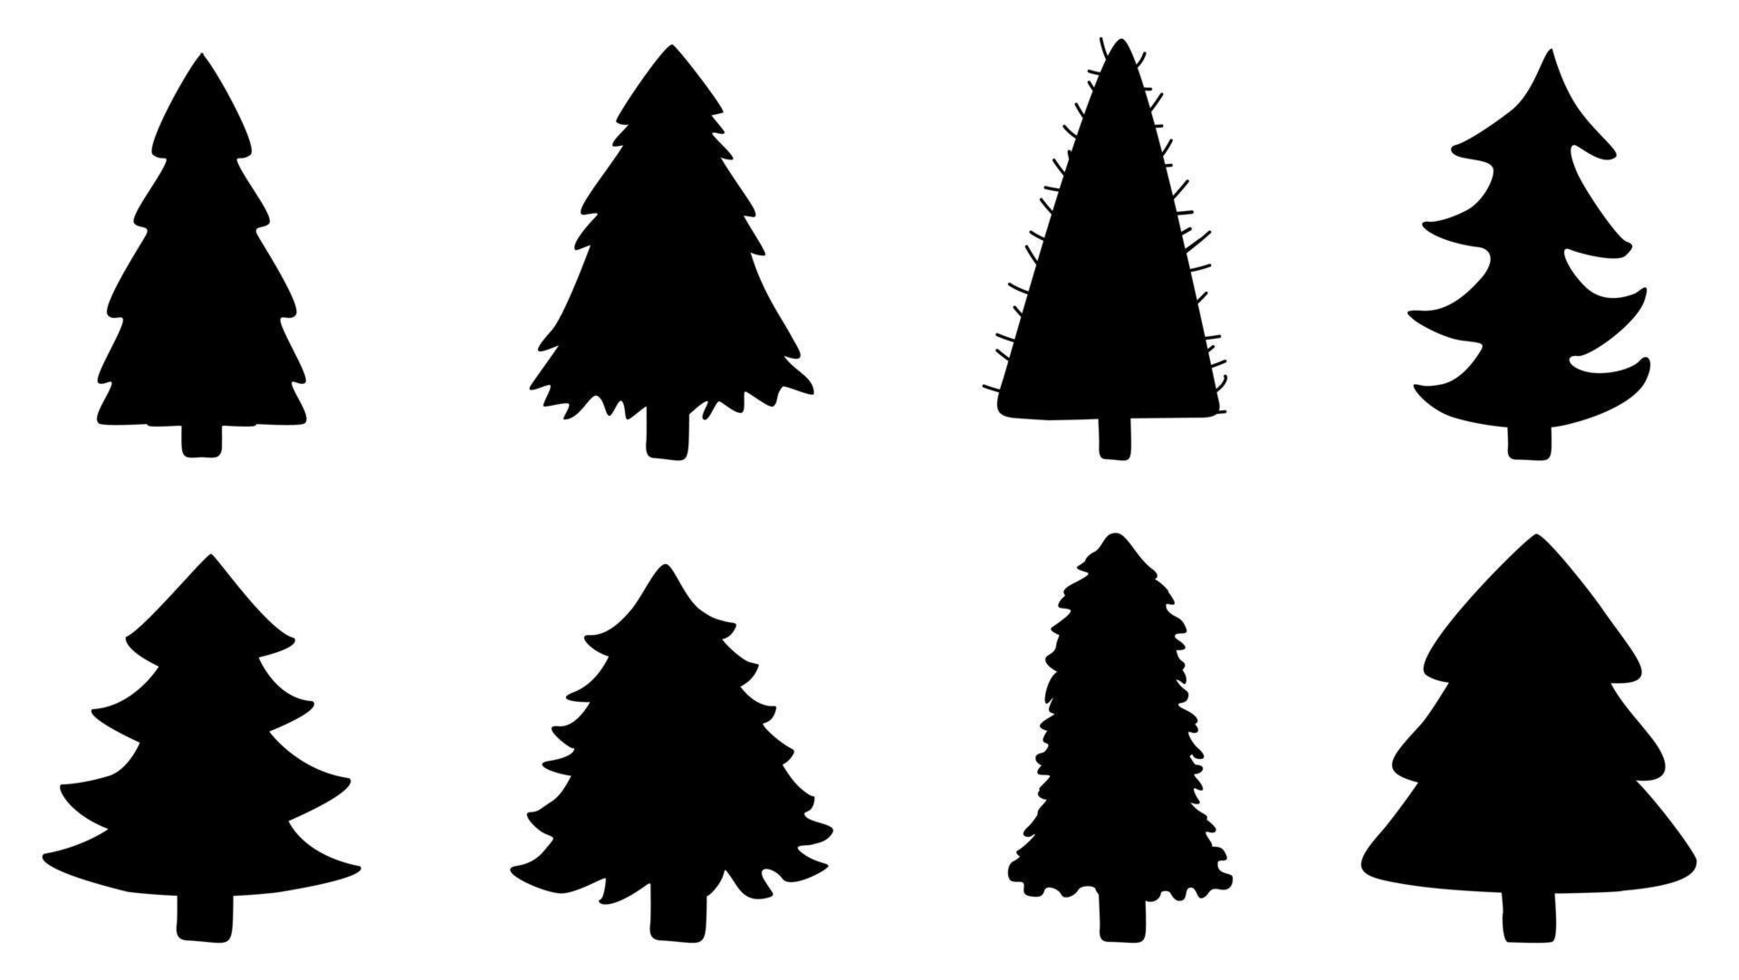 Weihnachtsbaum-Silhouette-Symbol des neuen Jahres. Satz von schwarzen Objekten, Vektor isoliert.